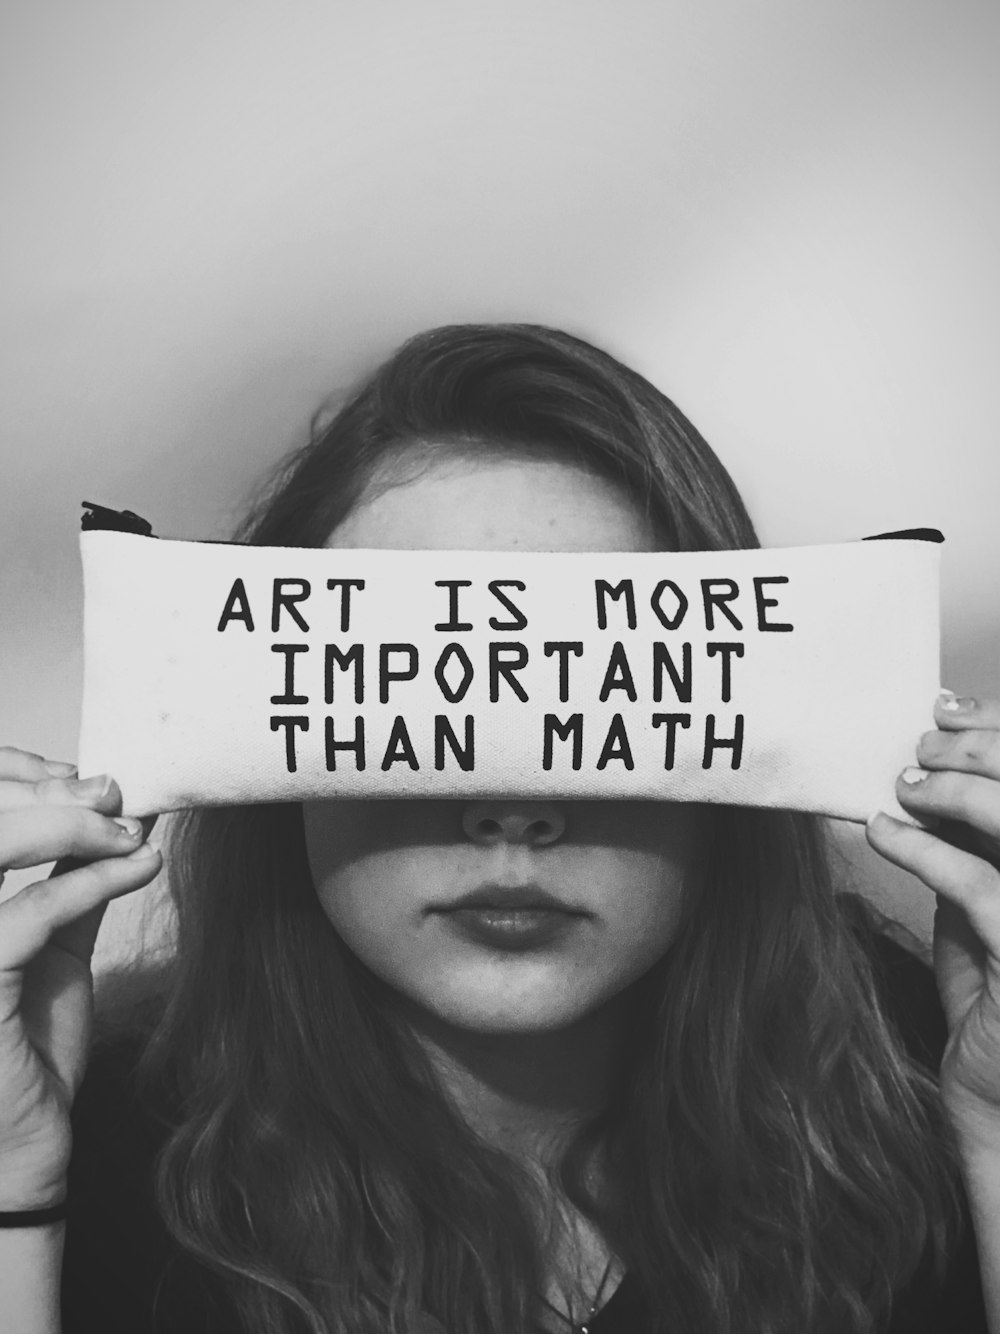 uma mulher segurando uma placa que diz que a arte é mais importante do que a matemática